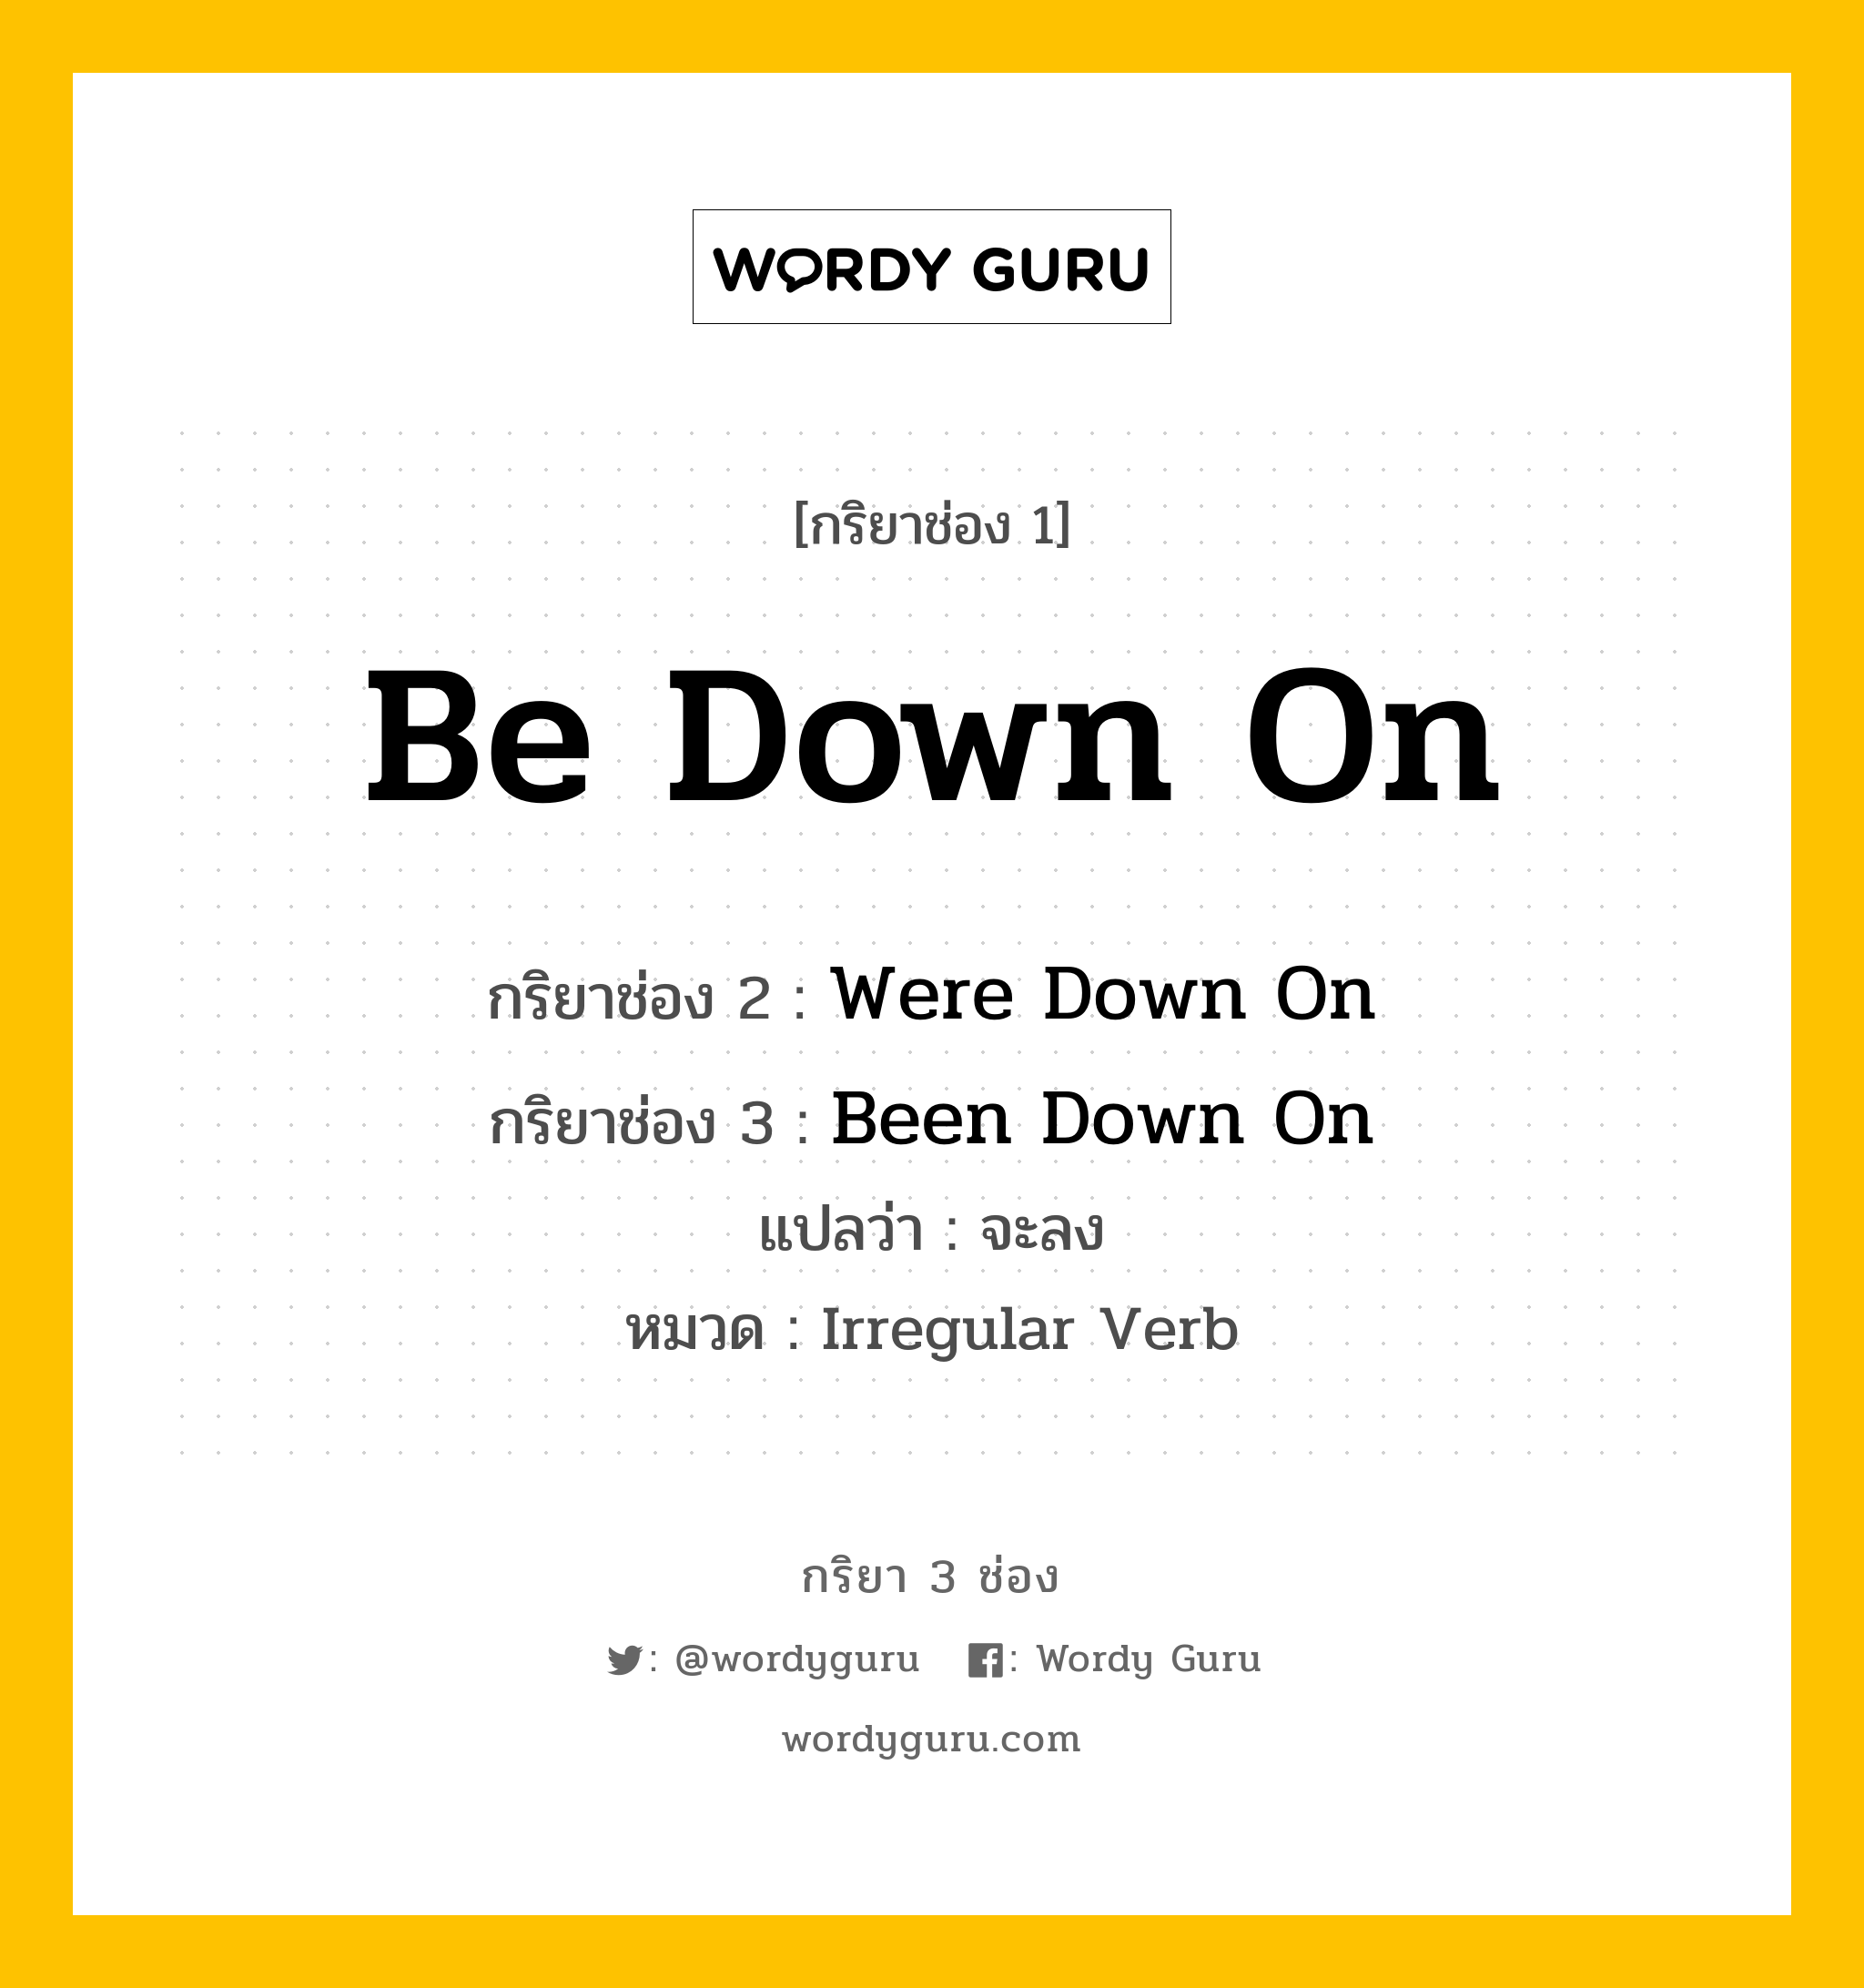 กริยา 3 ช่อง: Be Down On ช่อง 2 Be Down On ช่อง 3 คืออะไร, กริยาช่อง 1 Be Down On กริยาช่อง 2 Were Down On กริยาช่อง 3 Been Down On แปลว่า จะลง หมวด Irregular Verb หมวด Irregular Verb